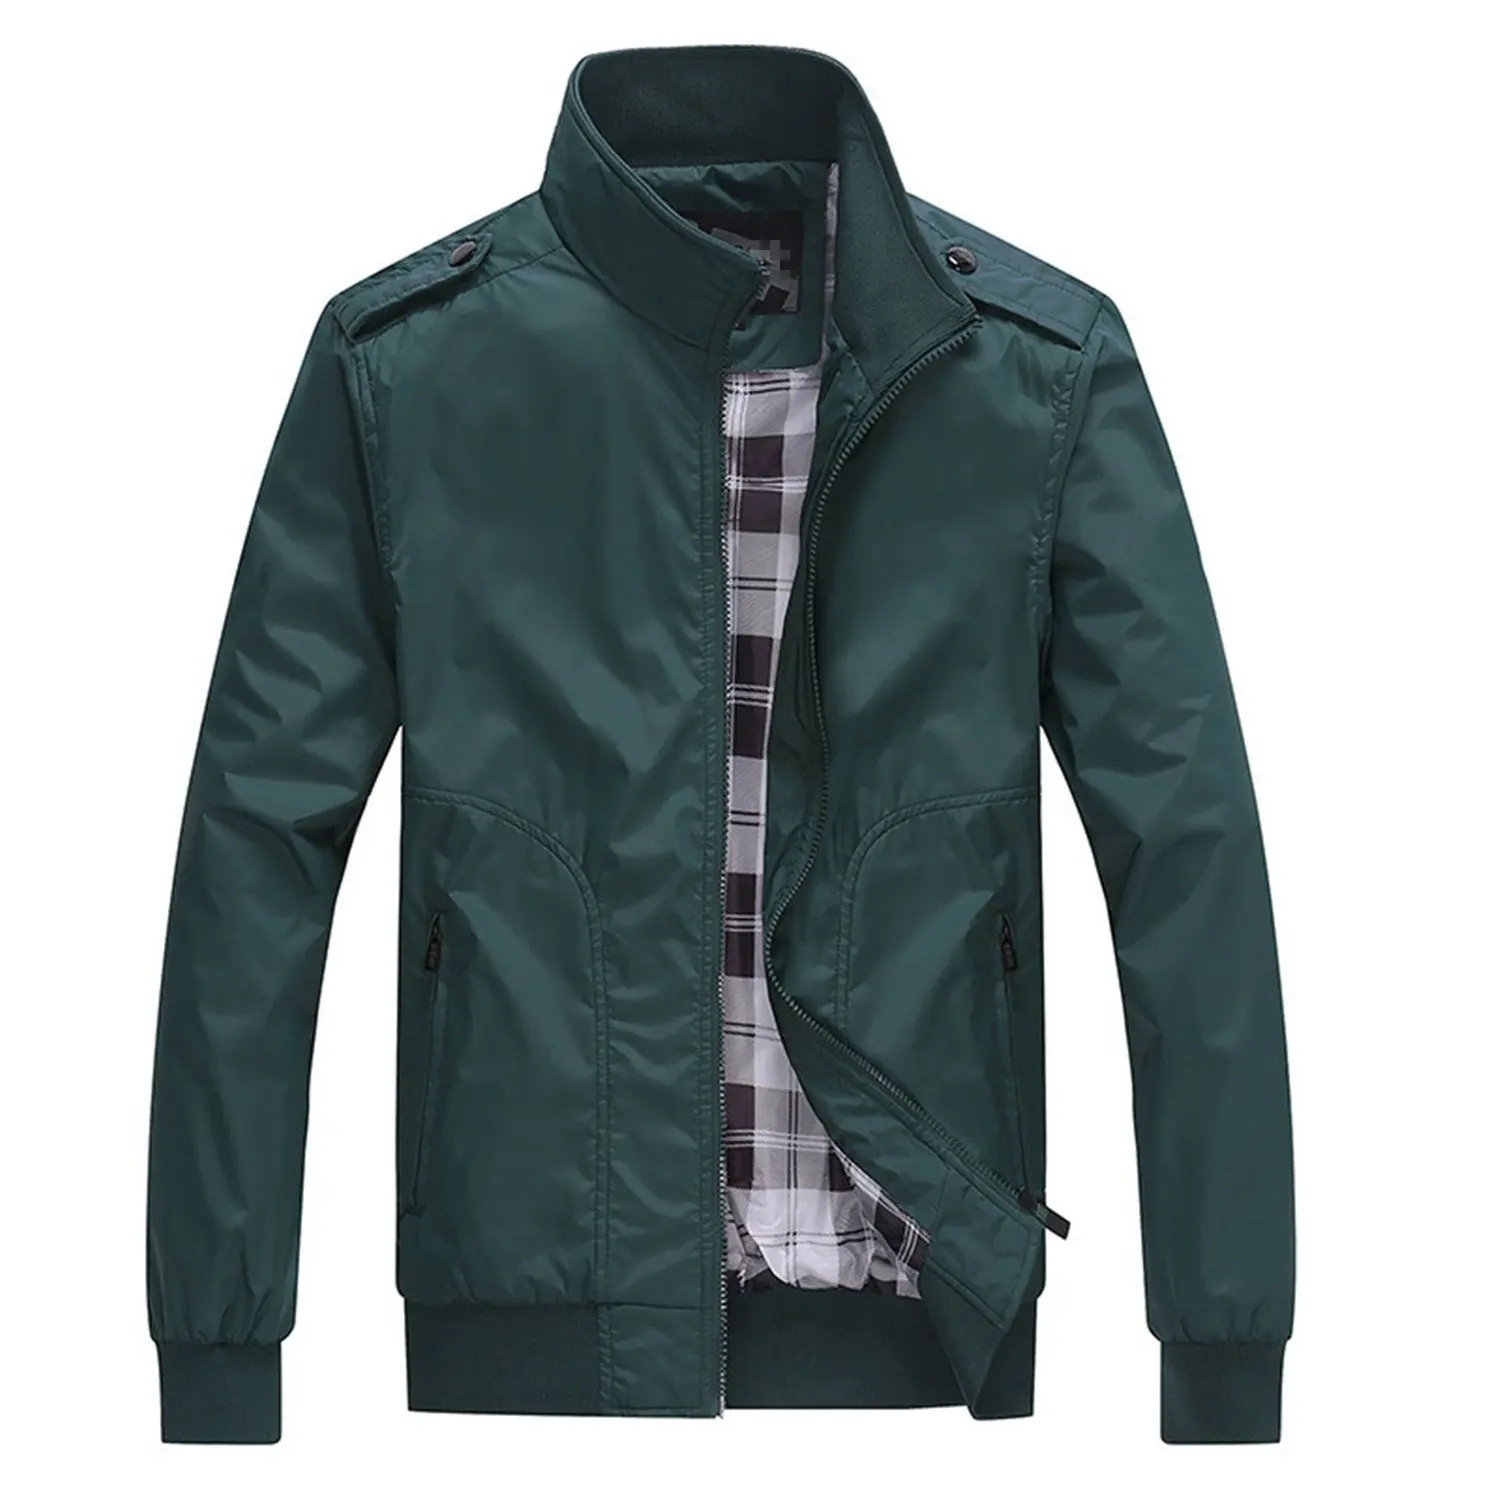 Cheap Branded Jacket, find Branded Jacket deals on line at Alibaba.com